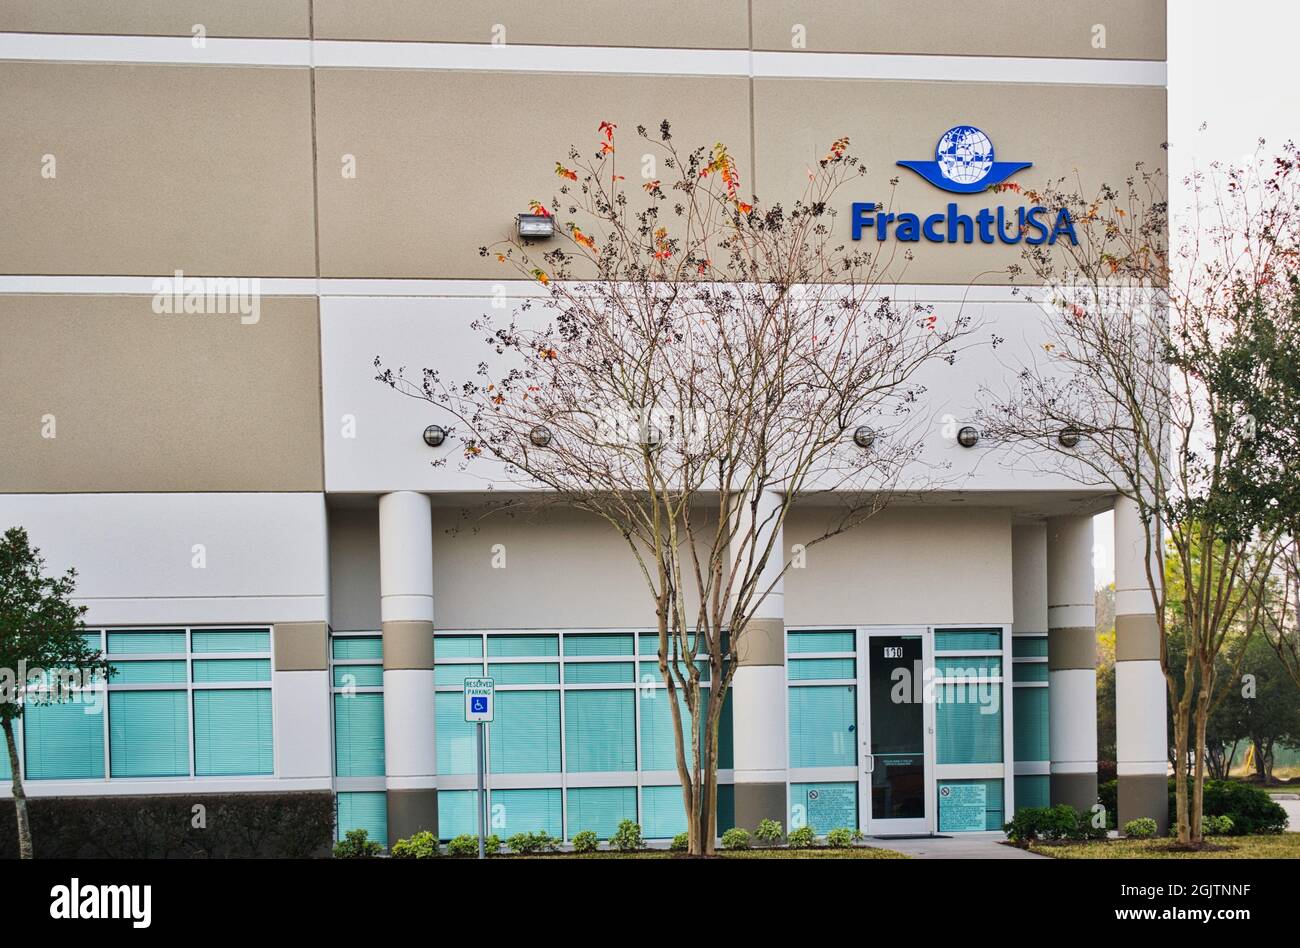 Houston, Texas USA 12-25-2019: Esterno degli uffici Fracht USA a Houston, Texas. Azienda logistica e trasporti fondata nel 1955. Foto Stock